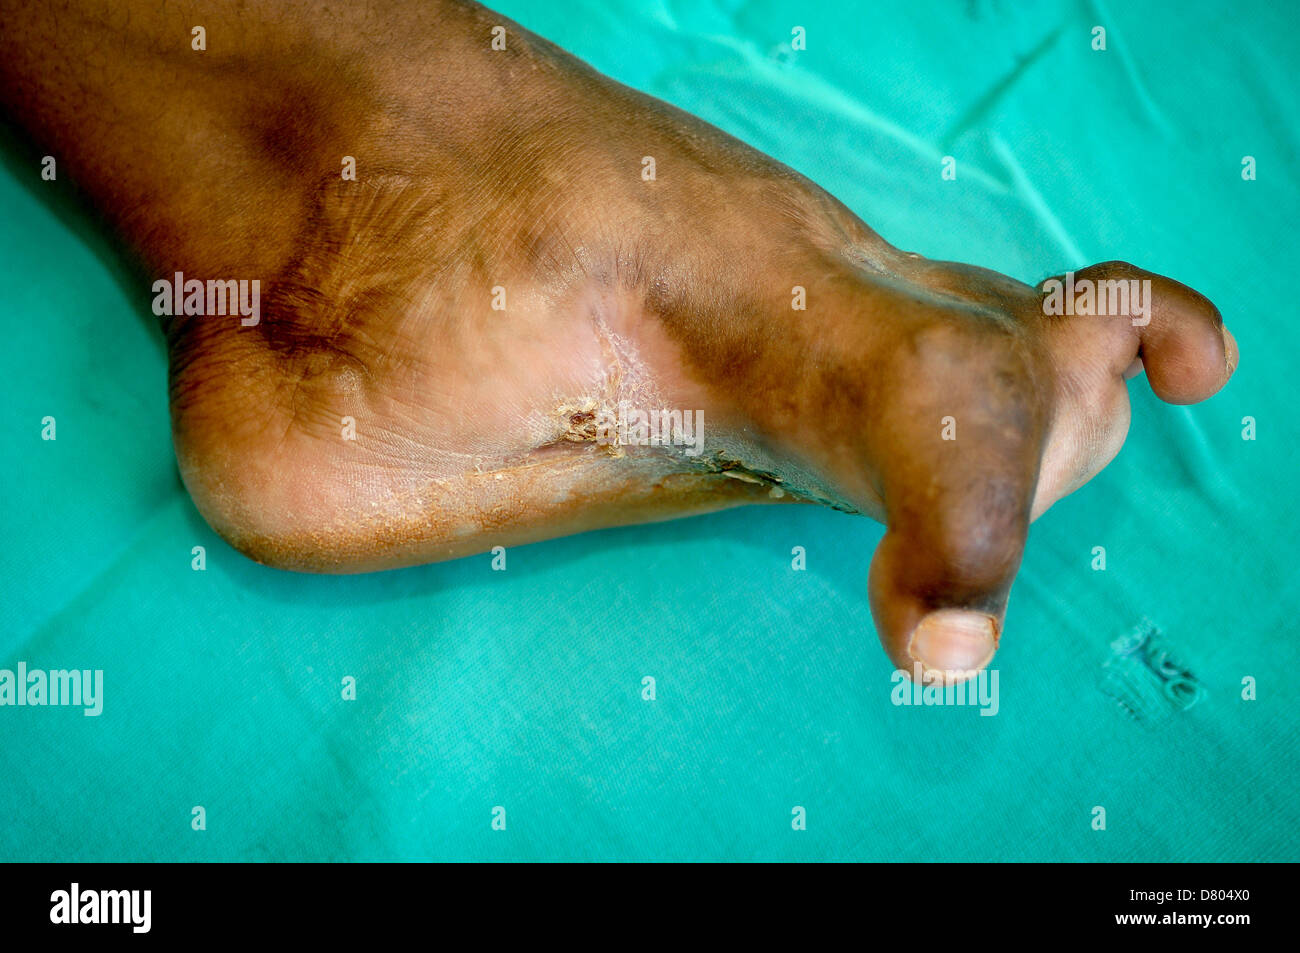 Myzetom Auswirkungen auf den Fuß eines jungen Mannes. Die Myzetom hat auch starke Verformung der Zehen verursacht. Stockfoto